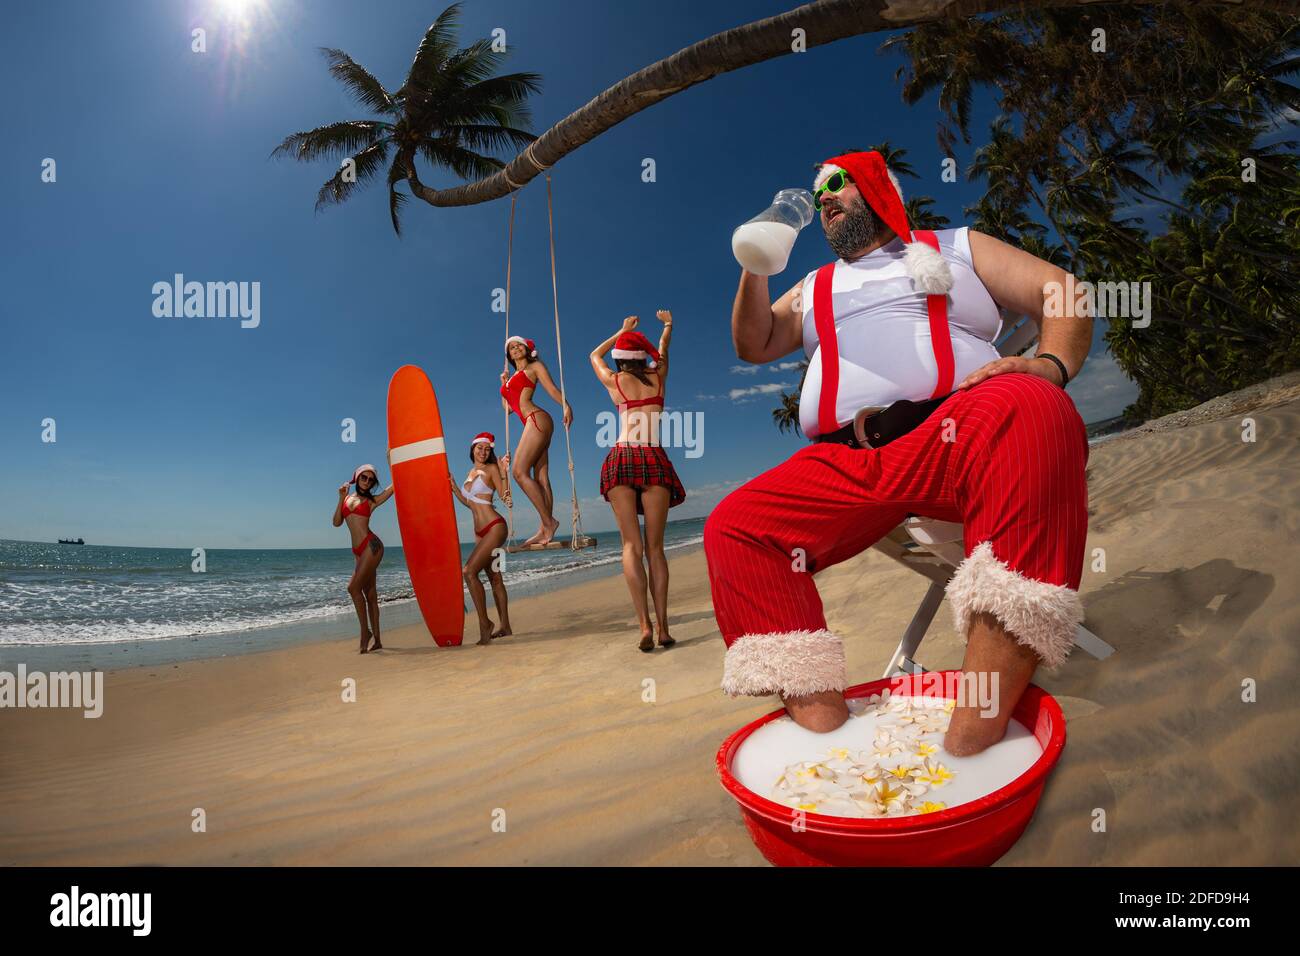 Noël Santa Claus a un repos sur un transat sur une plage tropicale de sable et de boire du lait de coco. De belles femmes s'amusent sur la plage. Banque D'Images